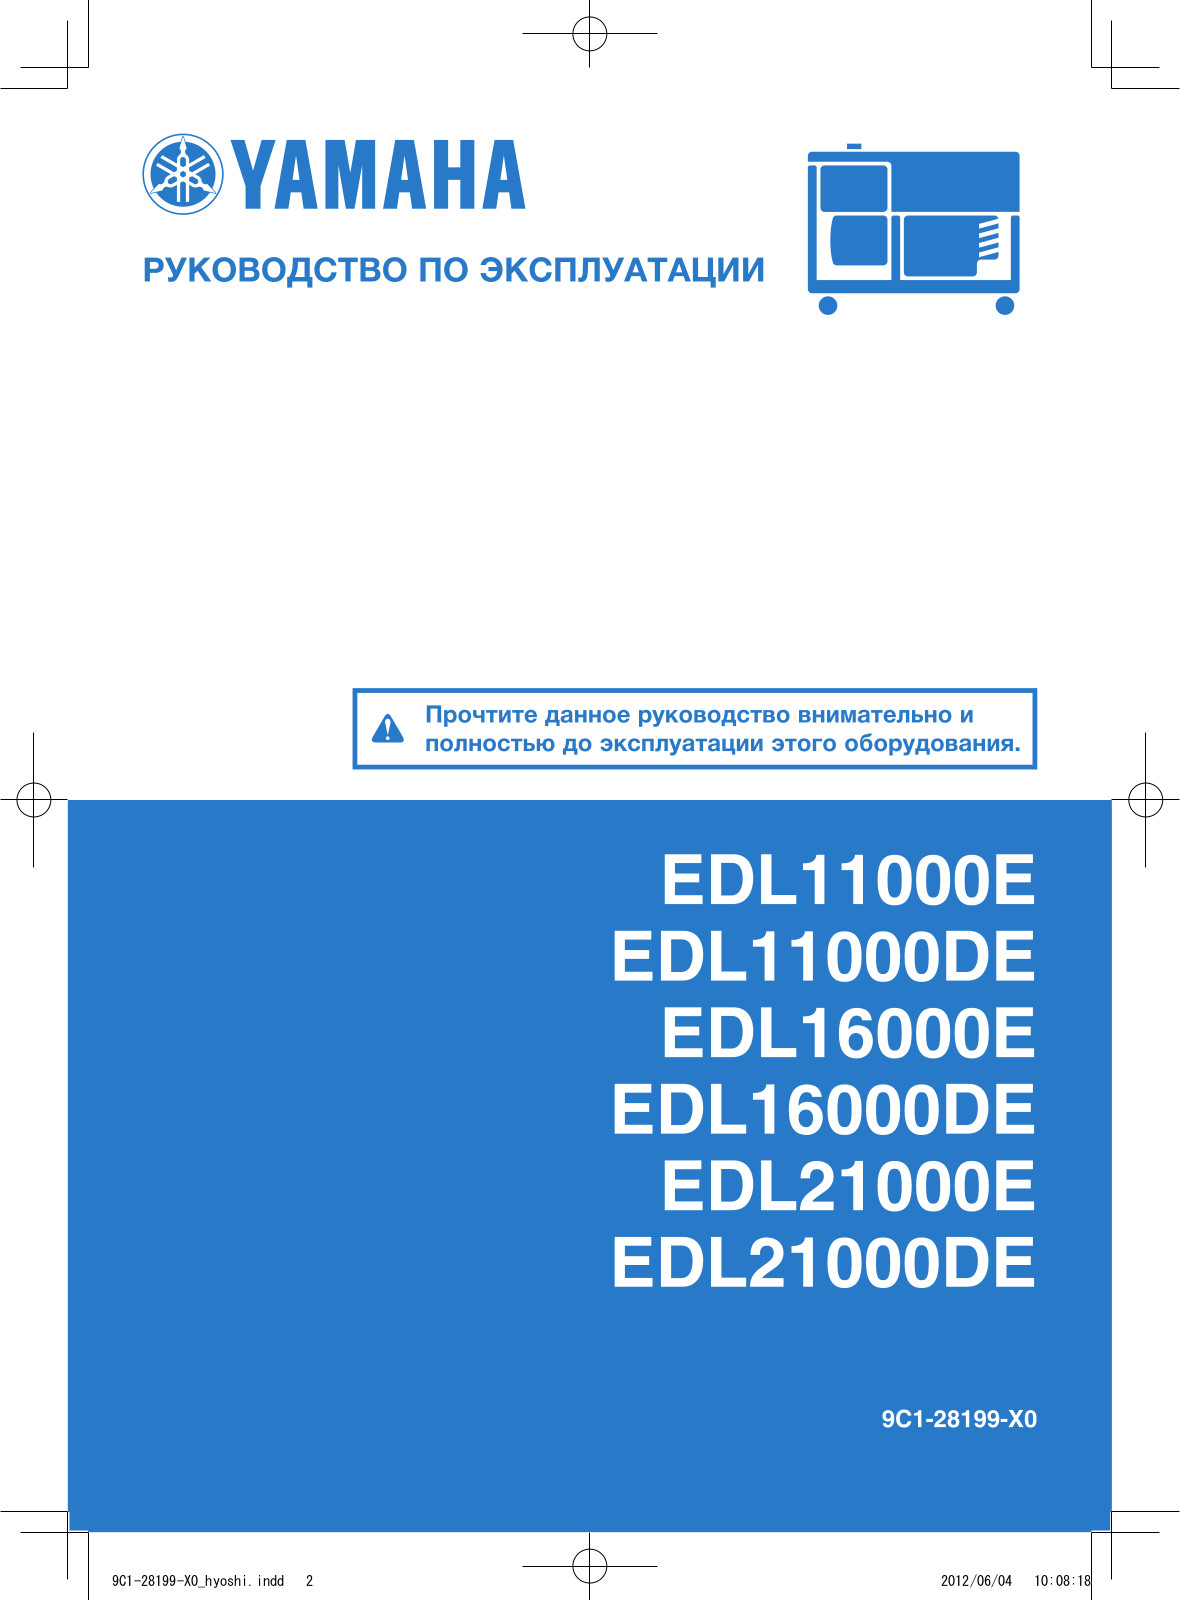 Yamaha EDL11000E, EDL11000DE, EDL16000E, EDL16000DE, EDL21000E User guide